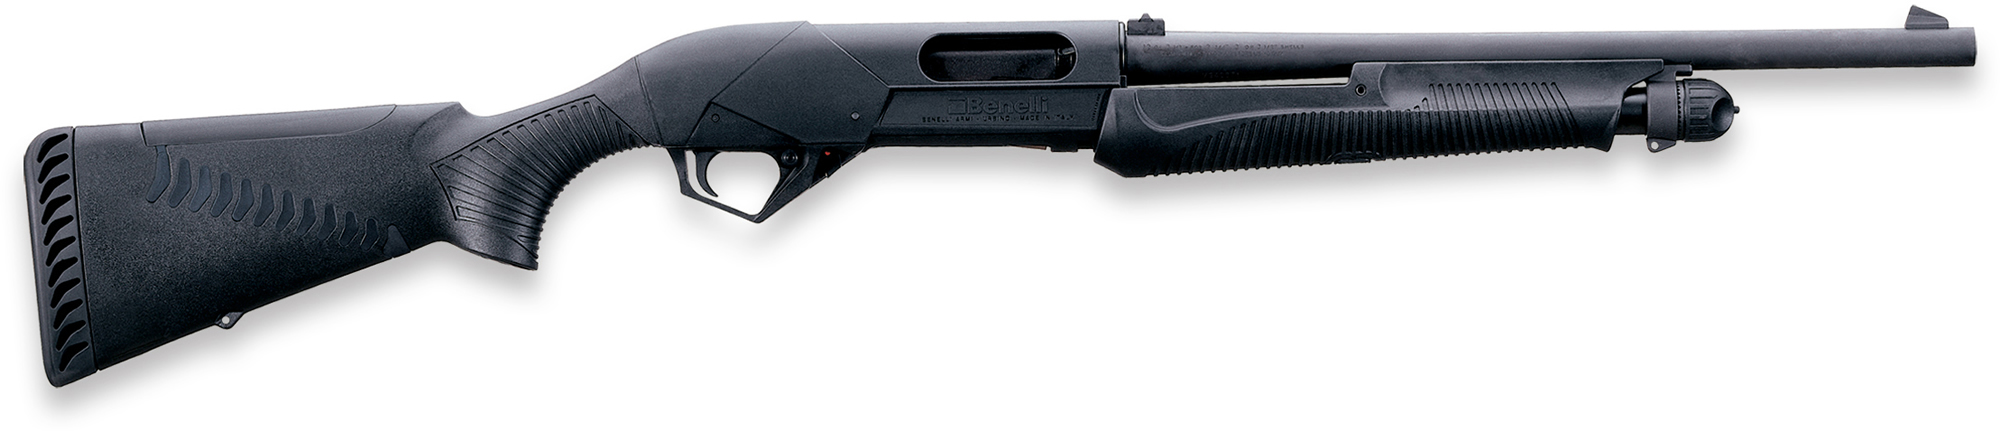 Benelli Super Nova Tactical Pump Shotgun 20155, 12 Gauge, 18